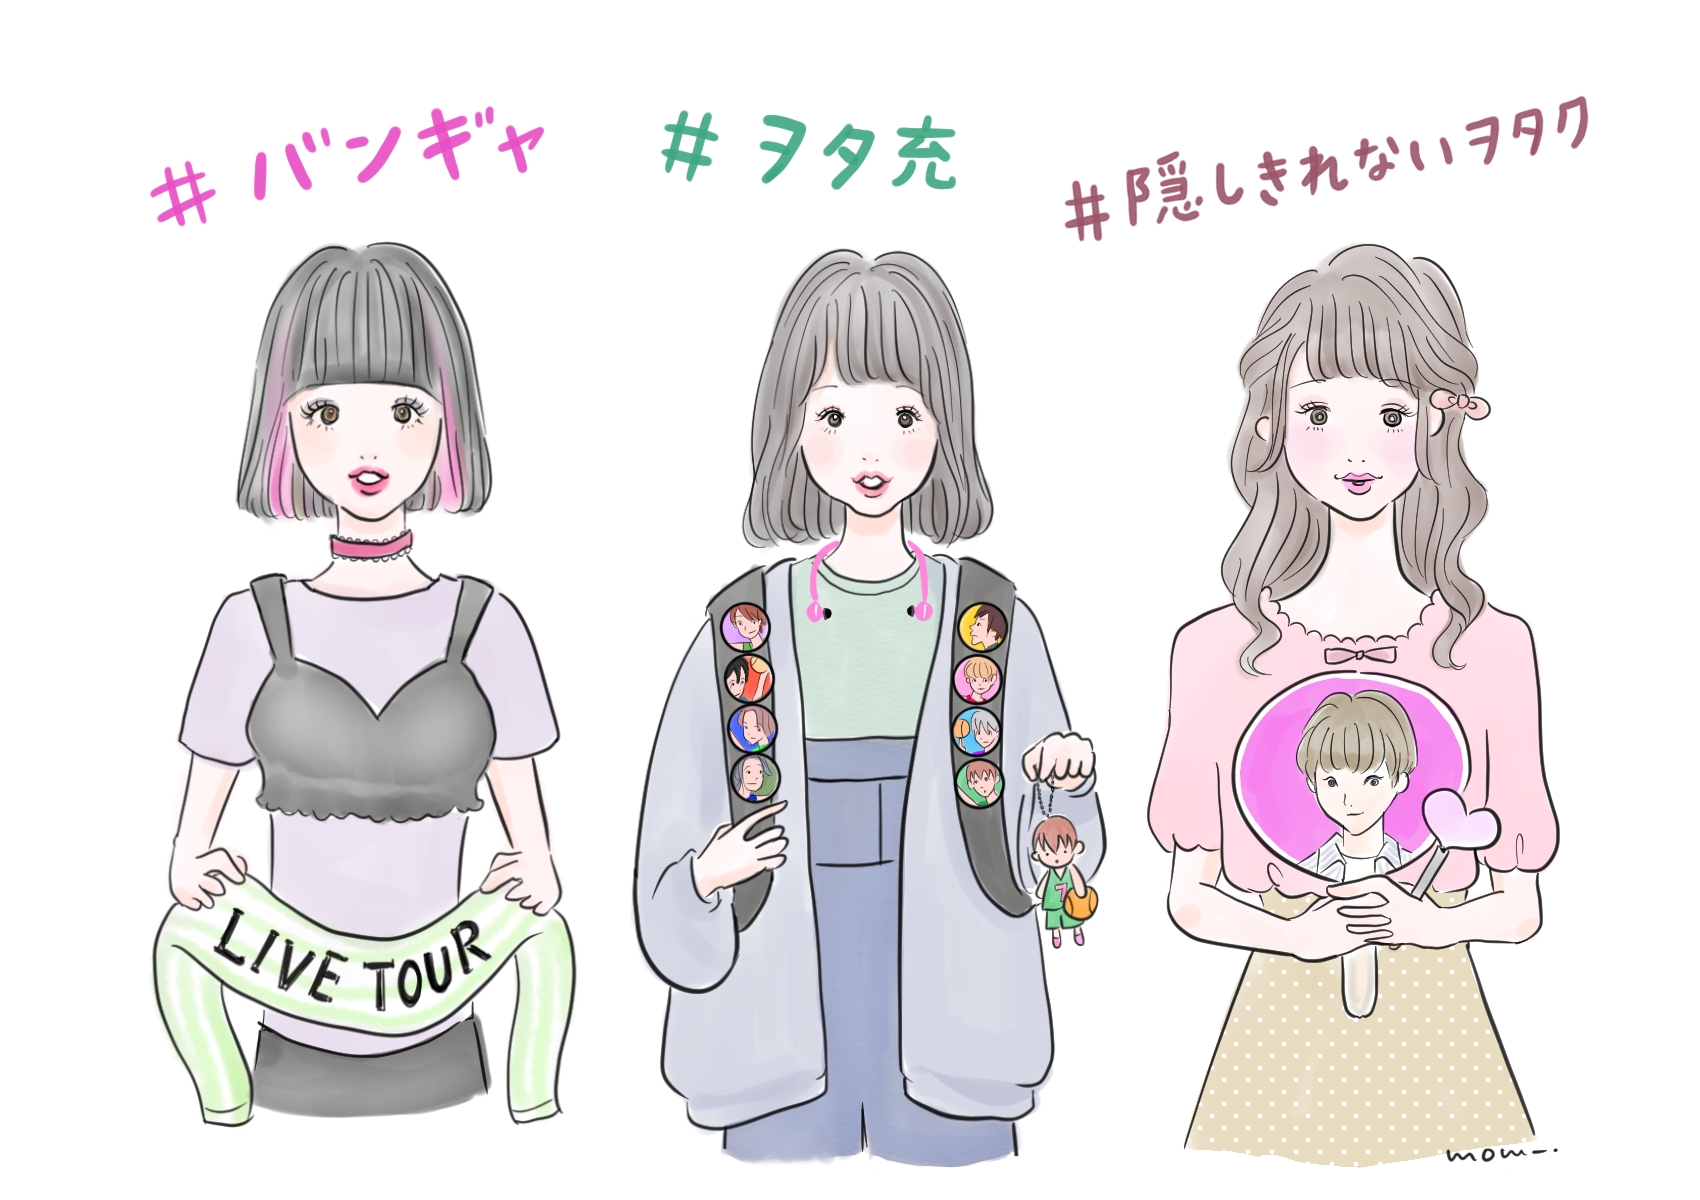 全国女子 と Shibuya109ガールズ 比較 ヲタ活 ファン活動 に関する調査 Around の女の子 約7割は ヲタク と自覚 株式会社shibuya109エンタテイメントのプレスリリース